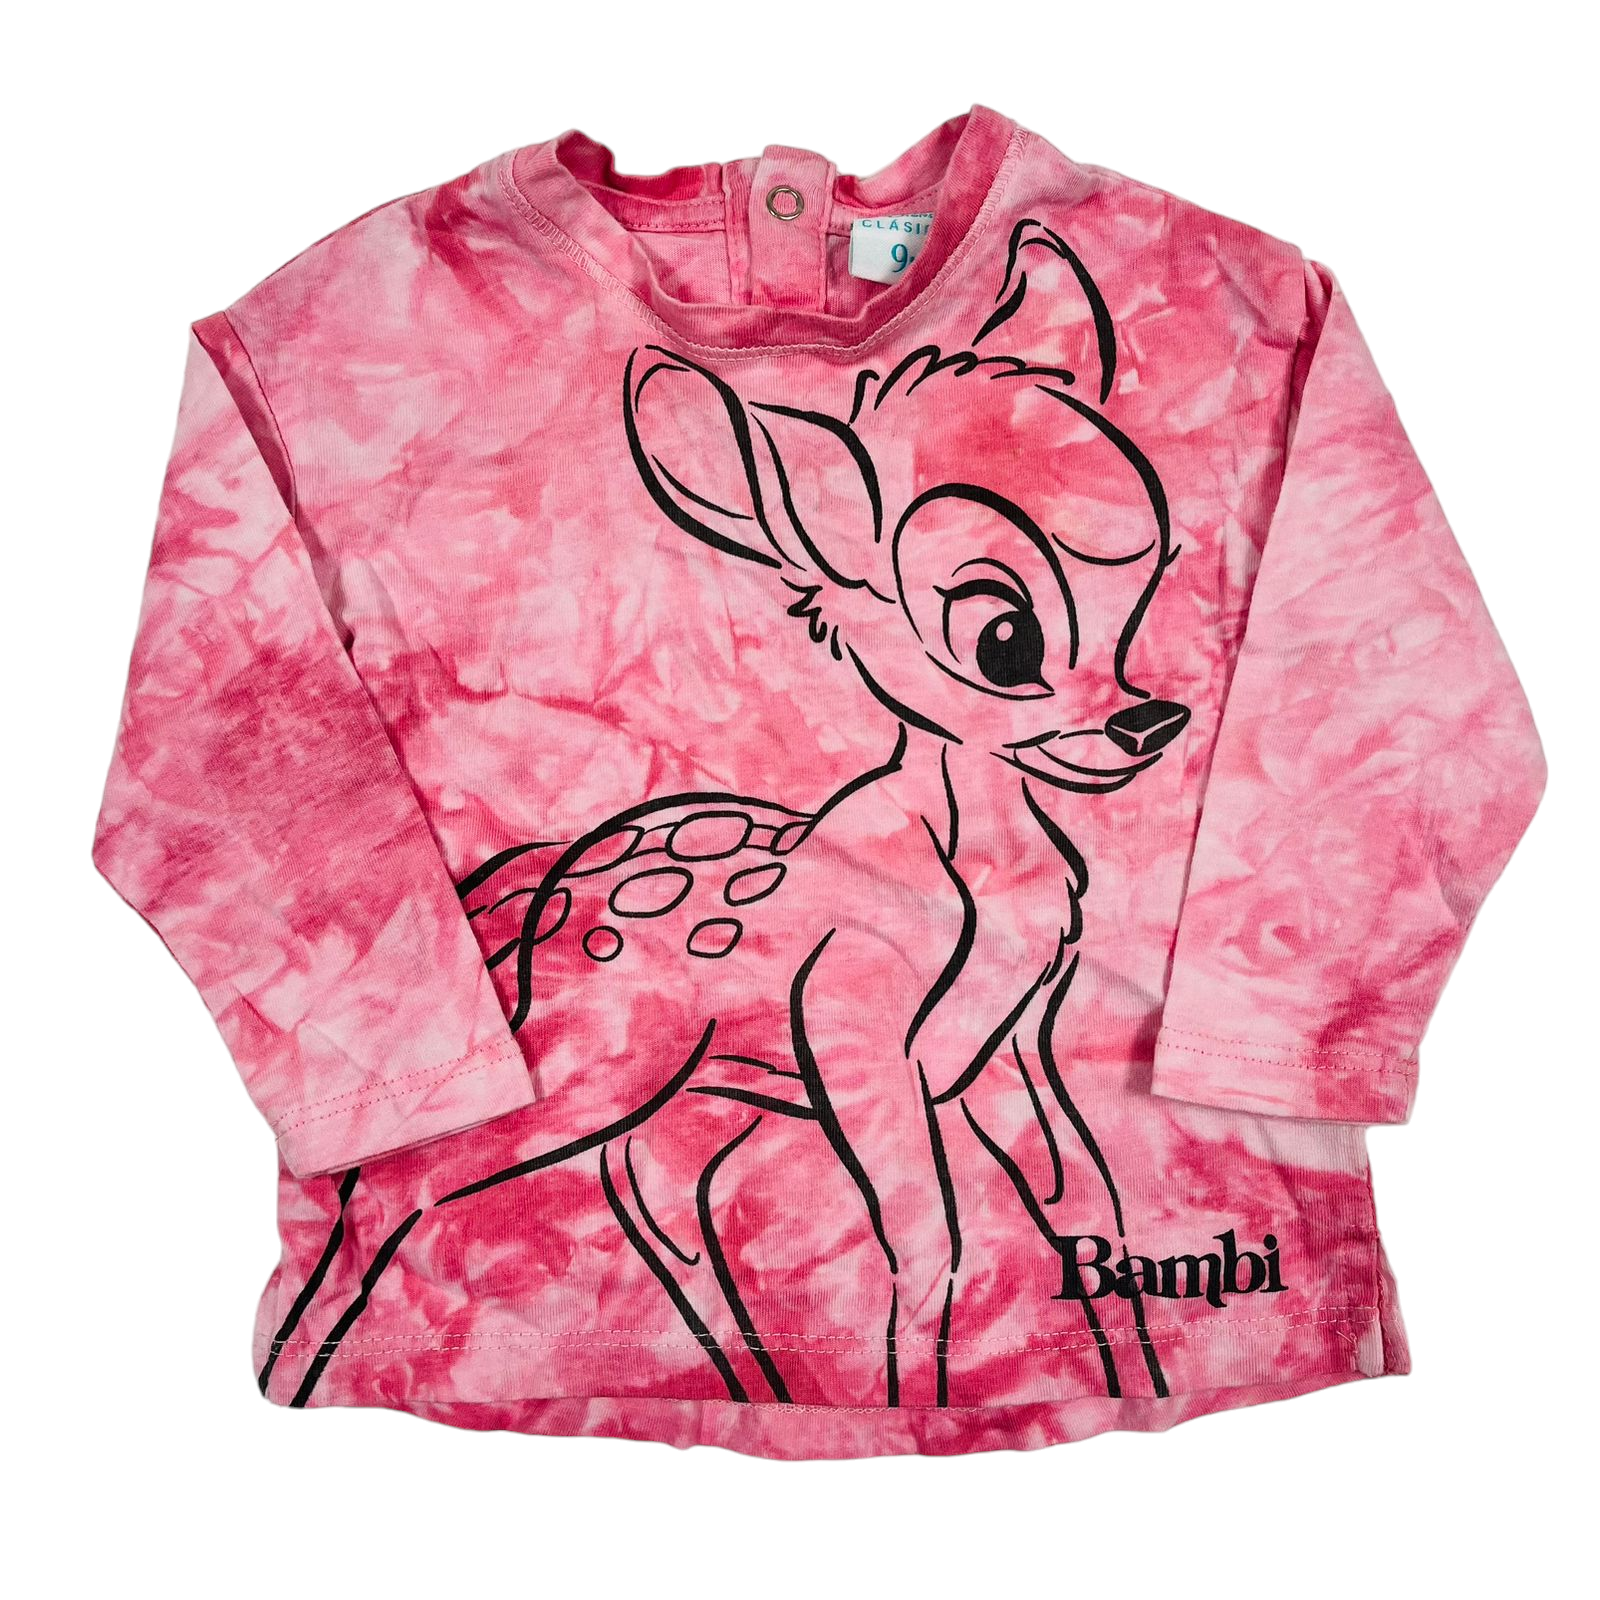 Polera manga larga desgrade rosado diseño de bambi